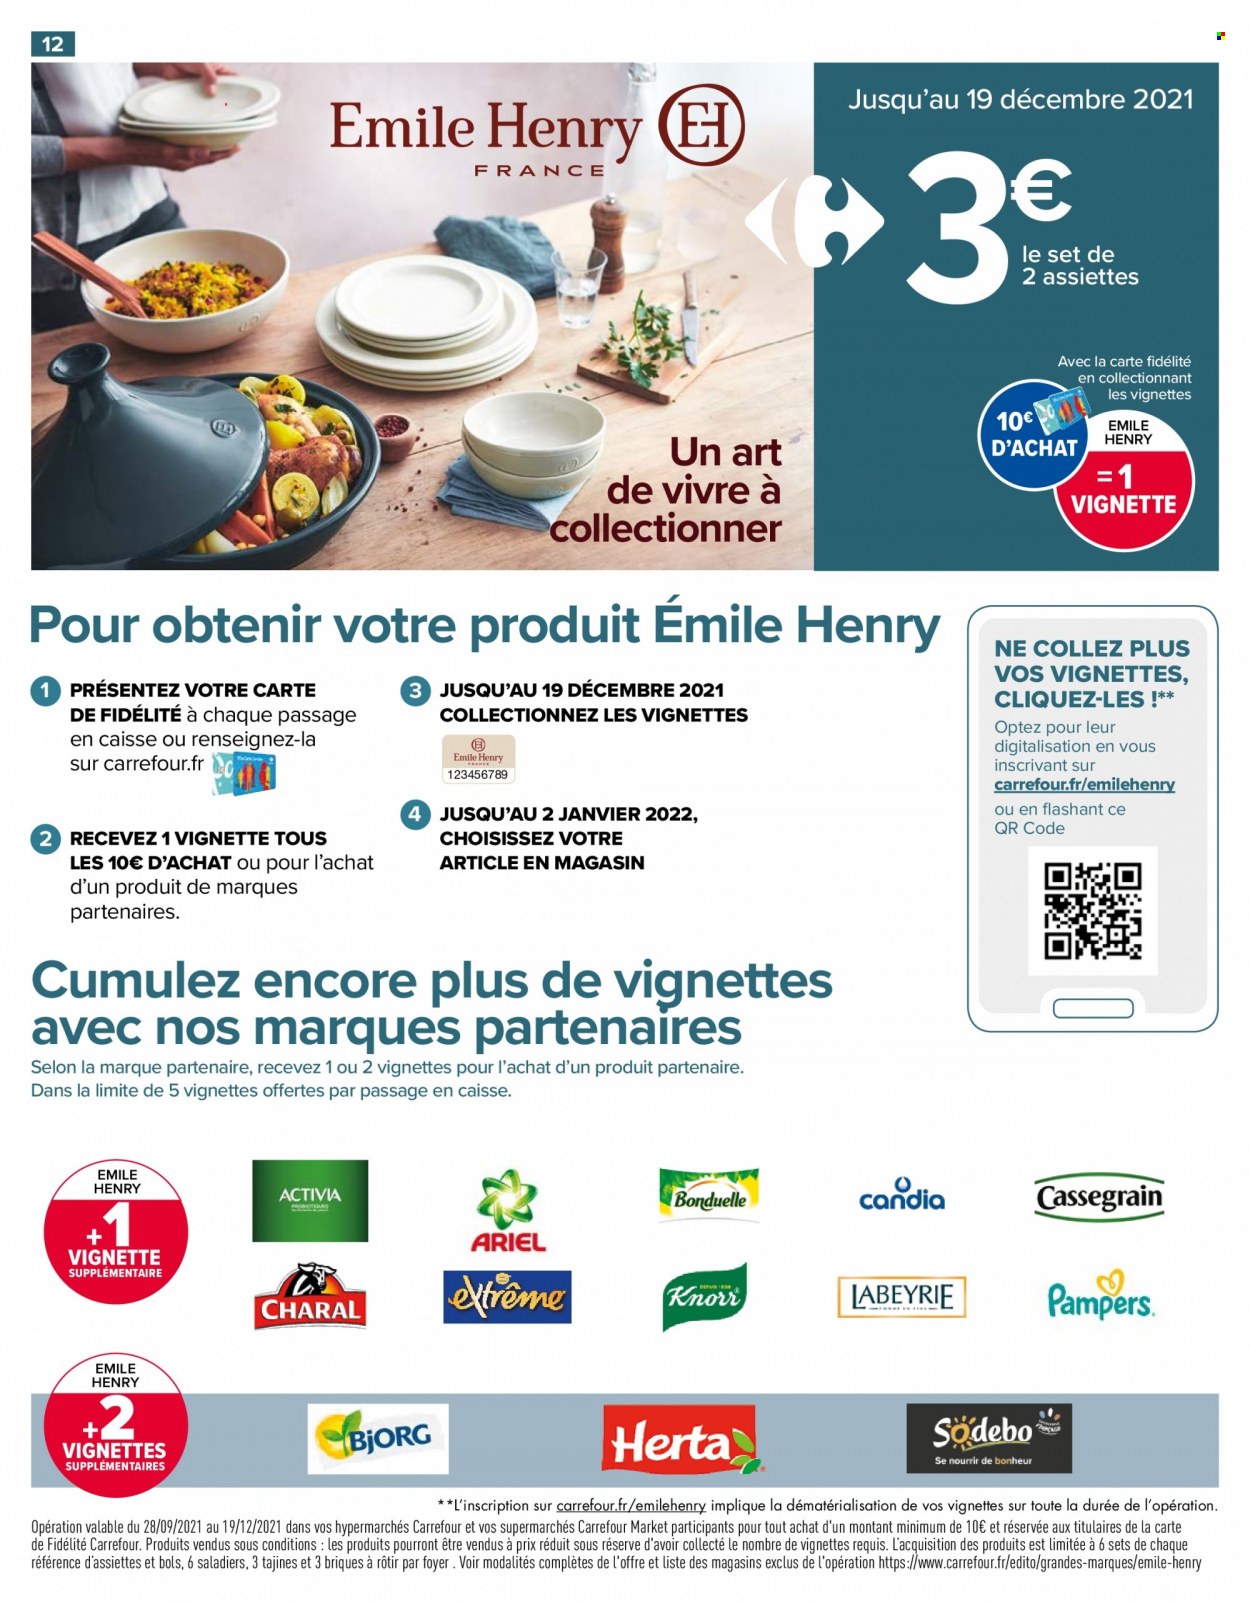 Catalogue Carrefour Market - 12.10.2021 - 24.10.2021. 